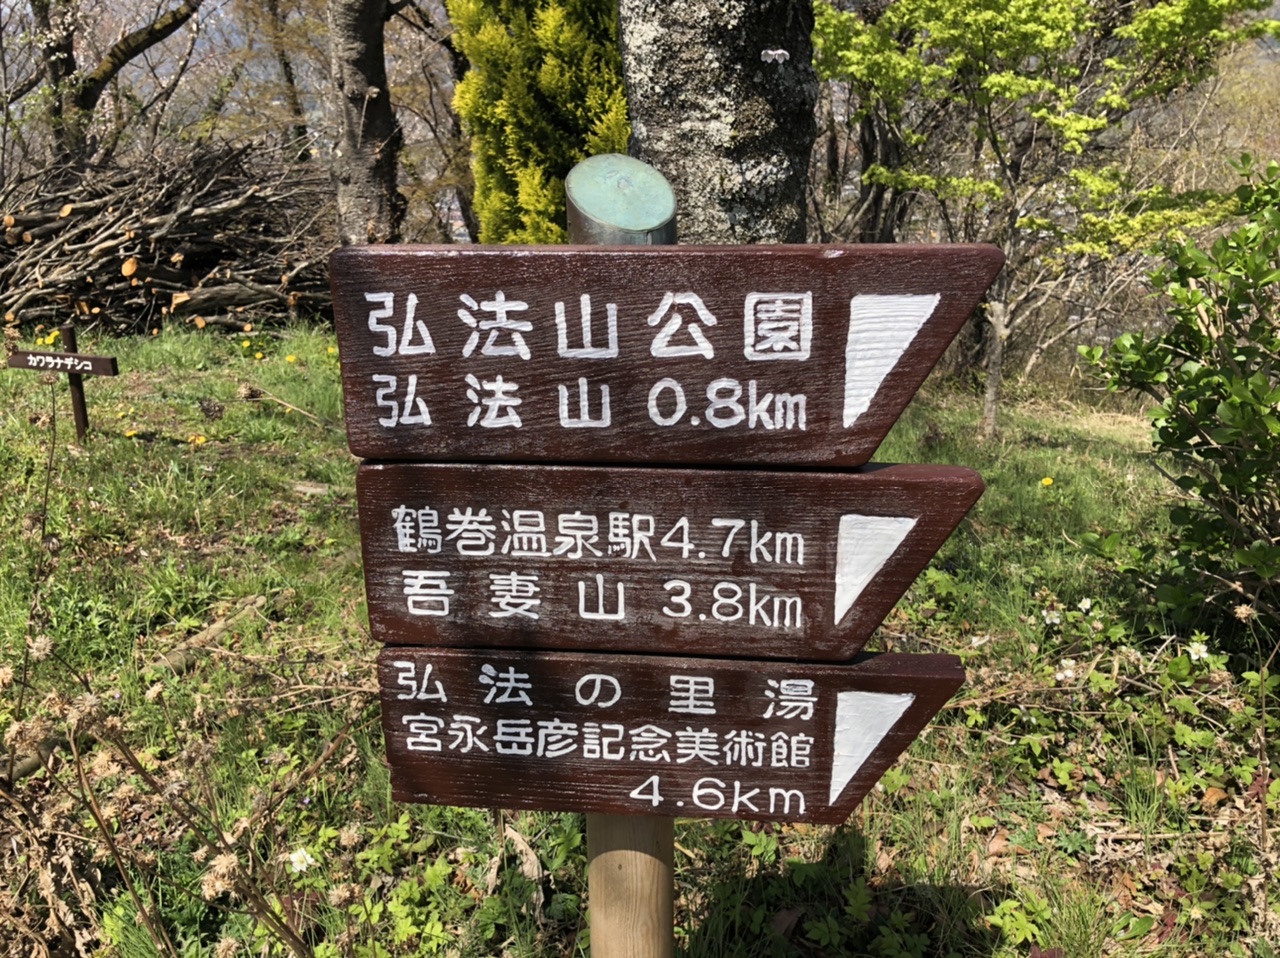 次は弘法山を
目指しまーす